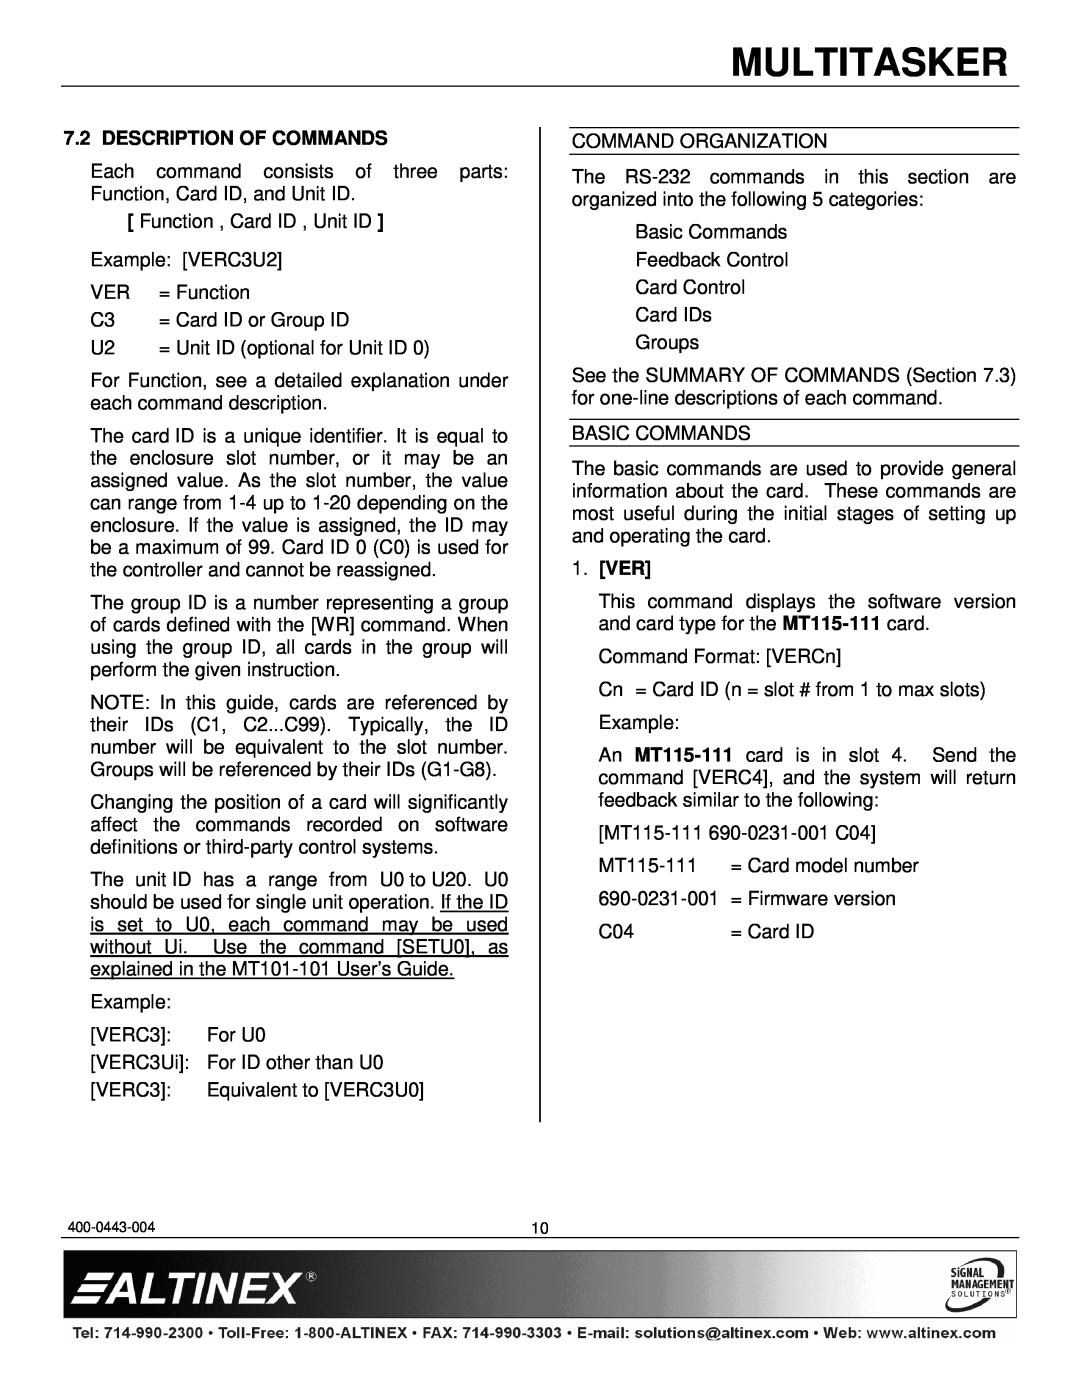 Altinex MT115-111 manual Multitasker, Description Of Commands, 1.VER 